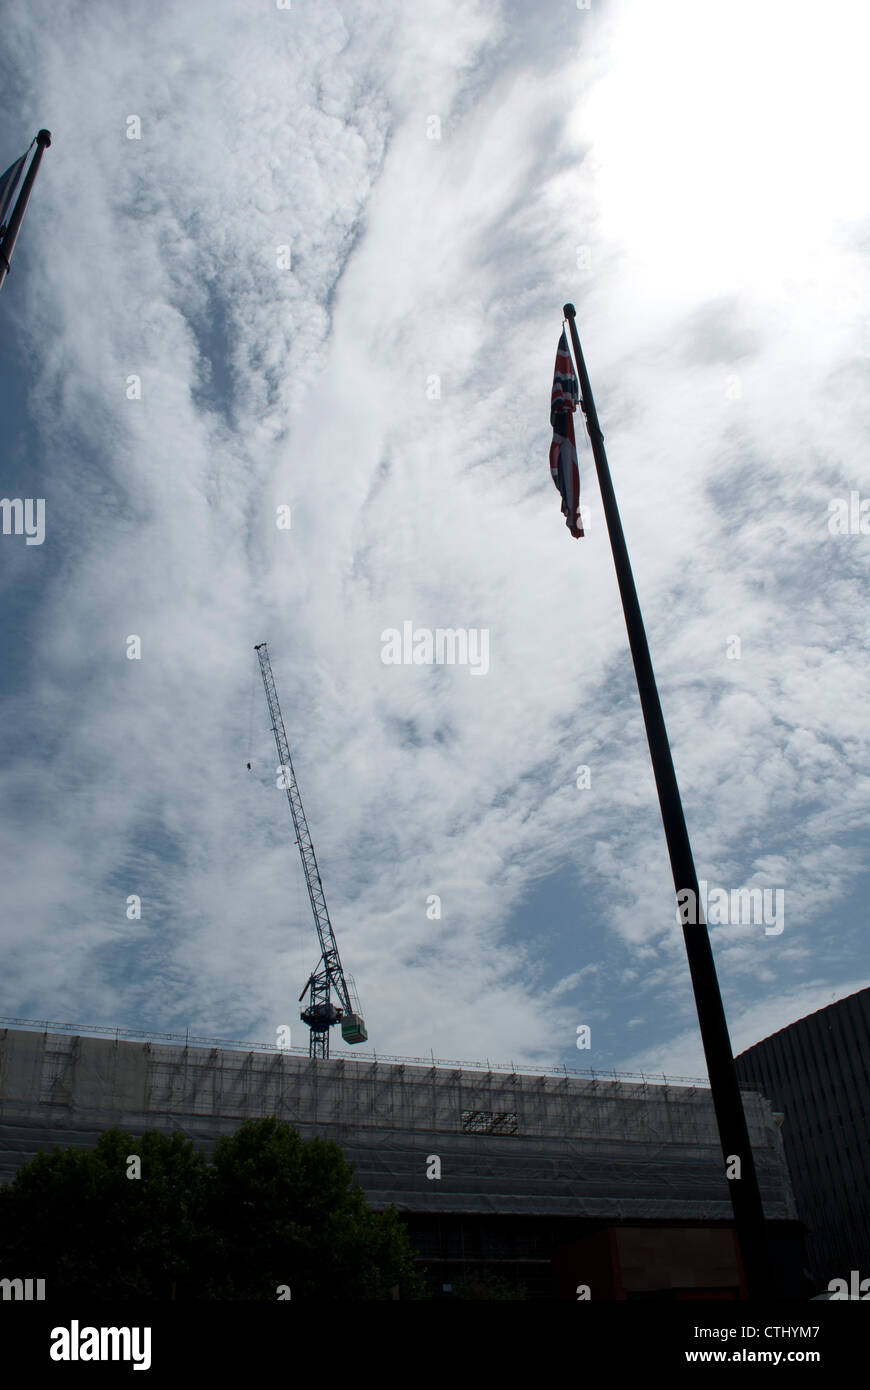 Bandiera europea e pennone parallelamente alla gru a torre in background stagliano cielo drammatico Foto Stock